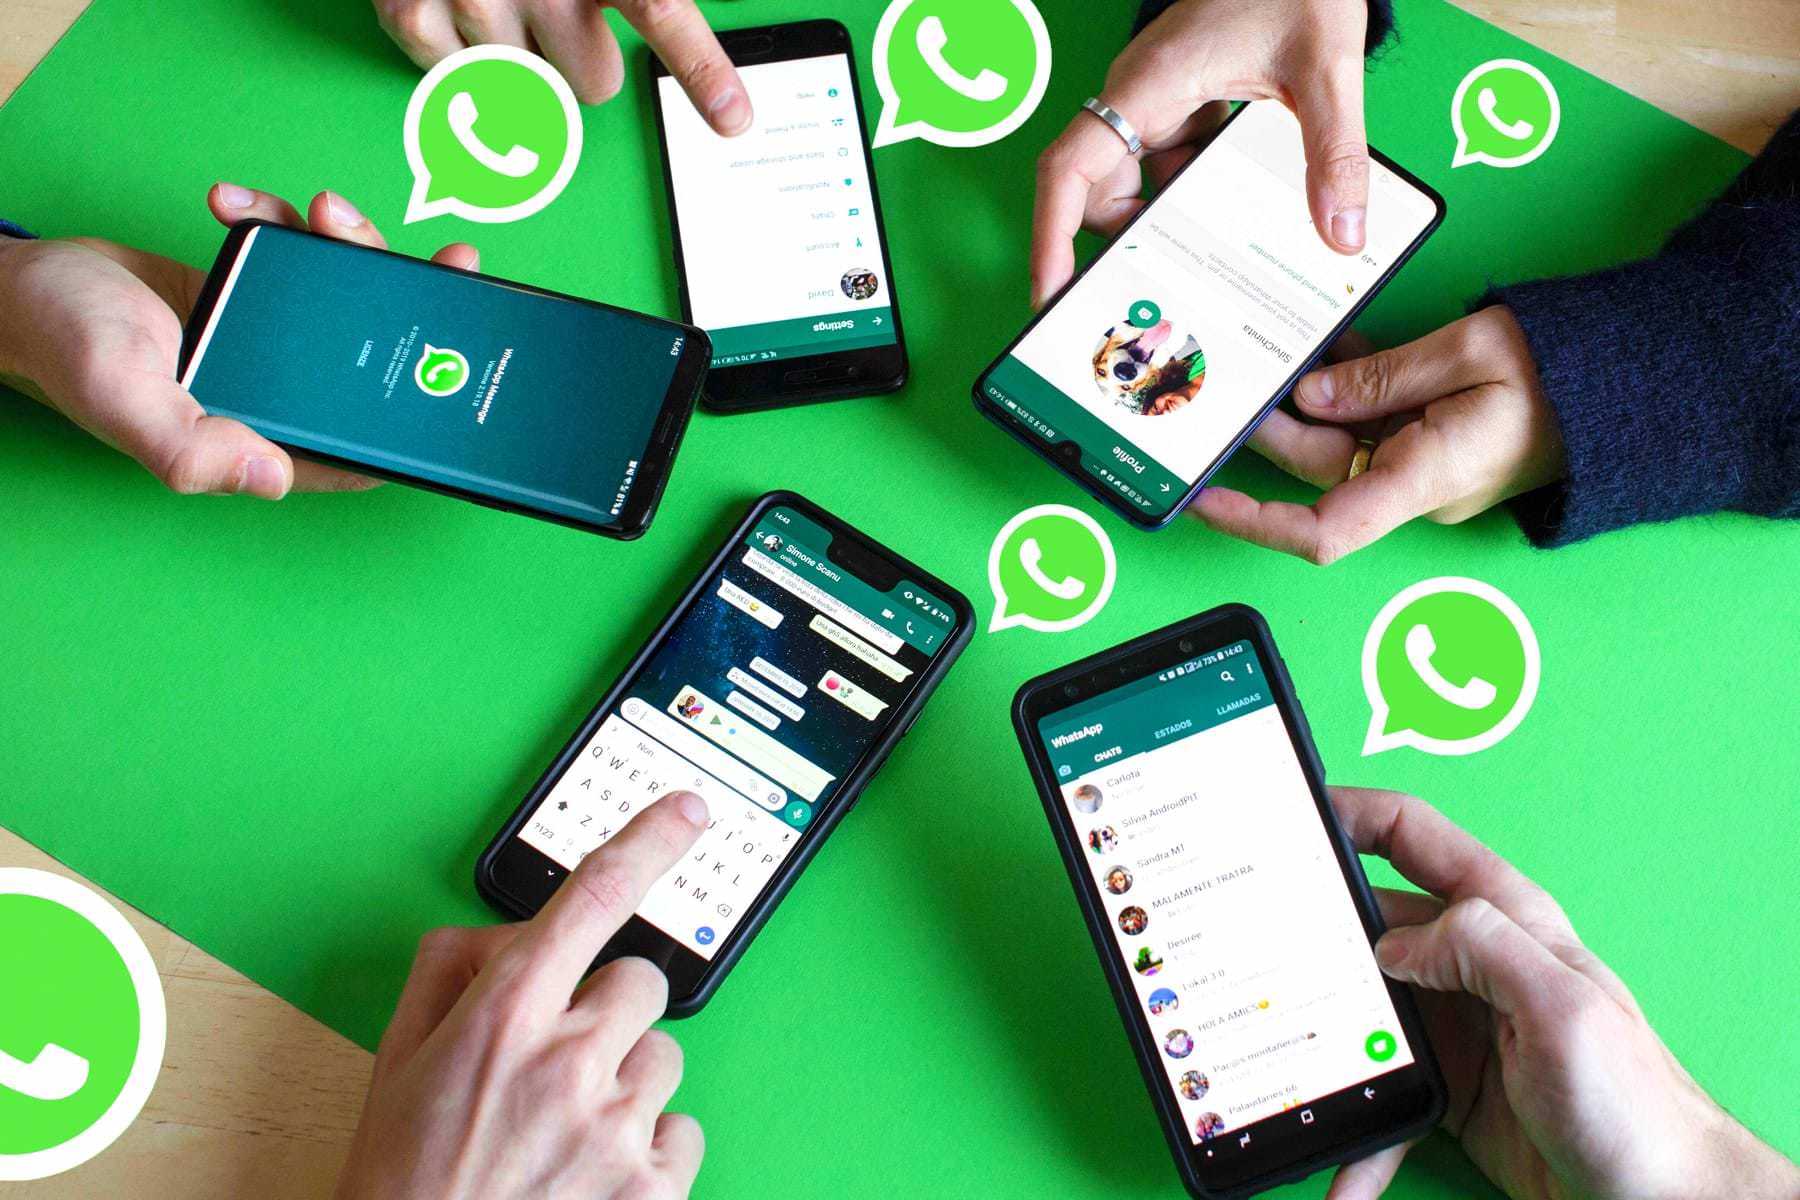 WhatsApp осчастливил пользователей долгожданной функцией. Ее ждали 10 лет